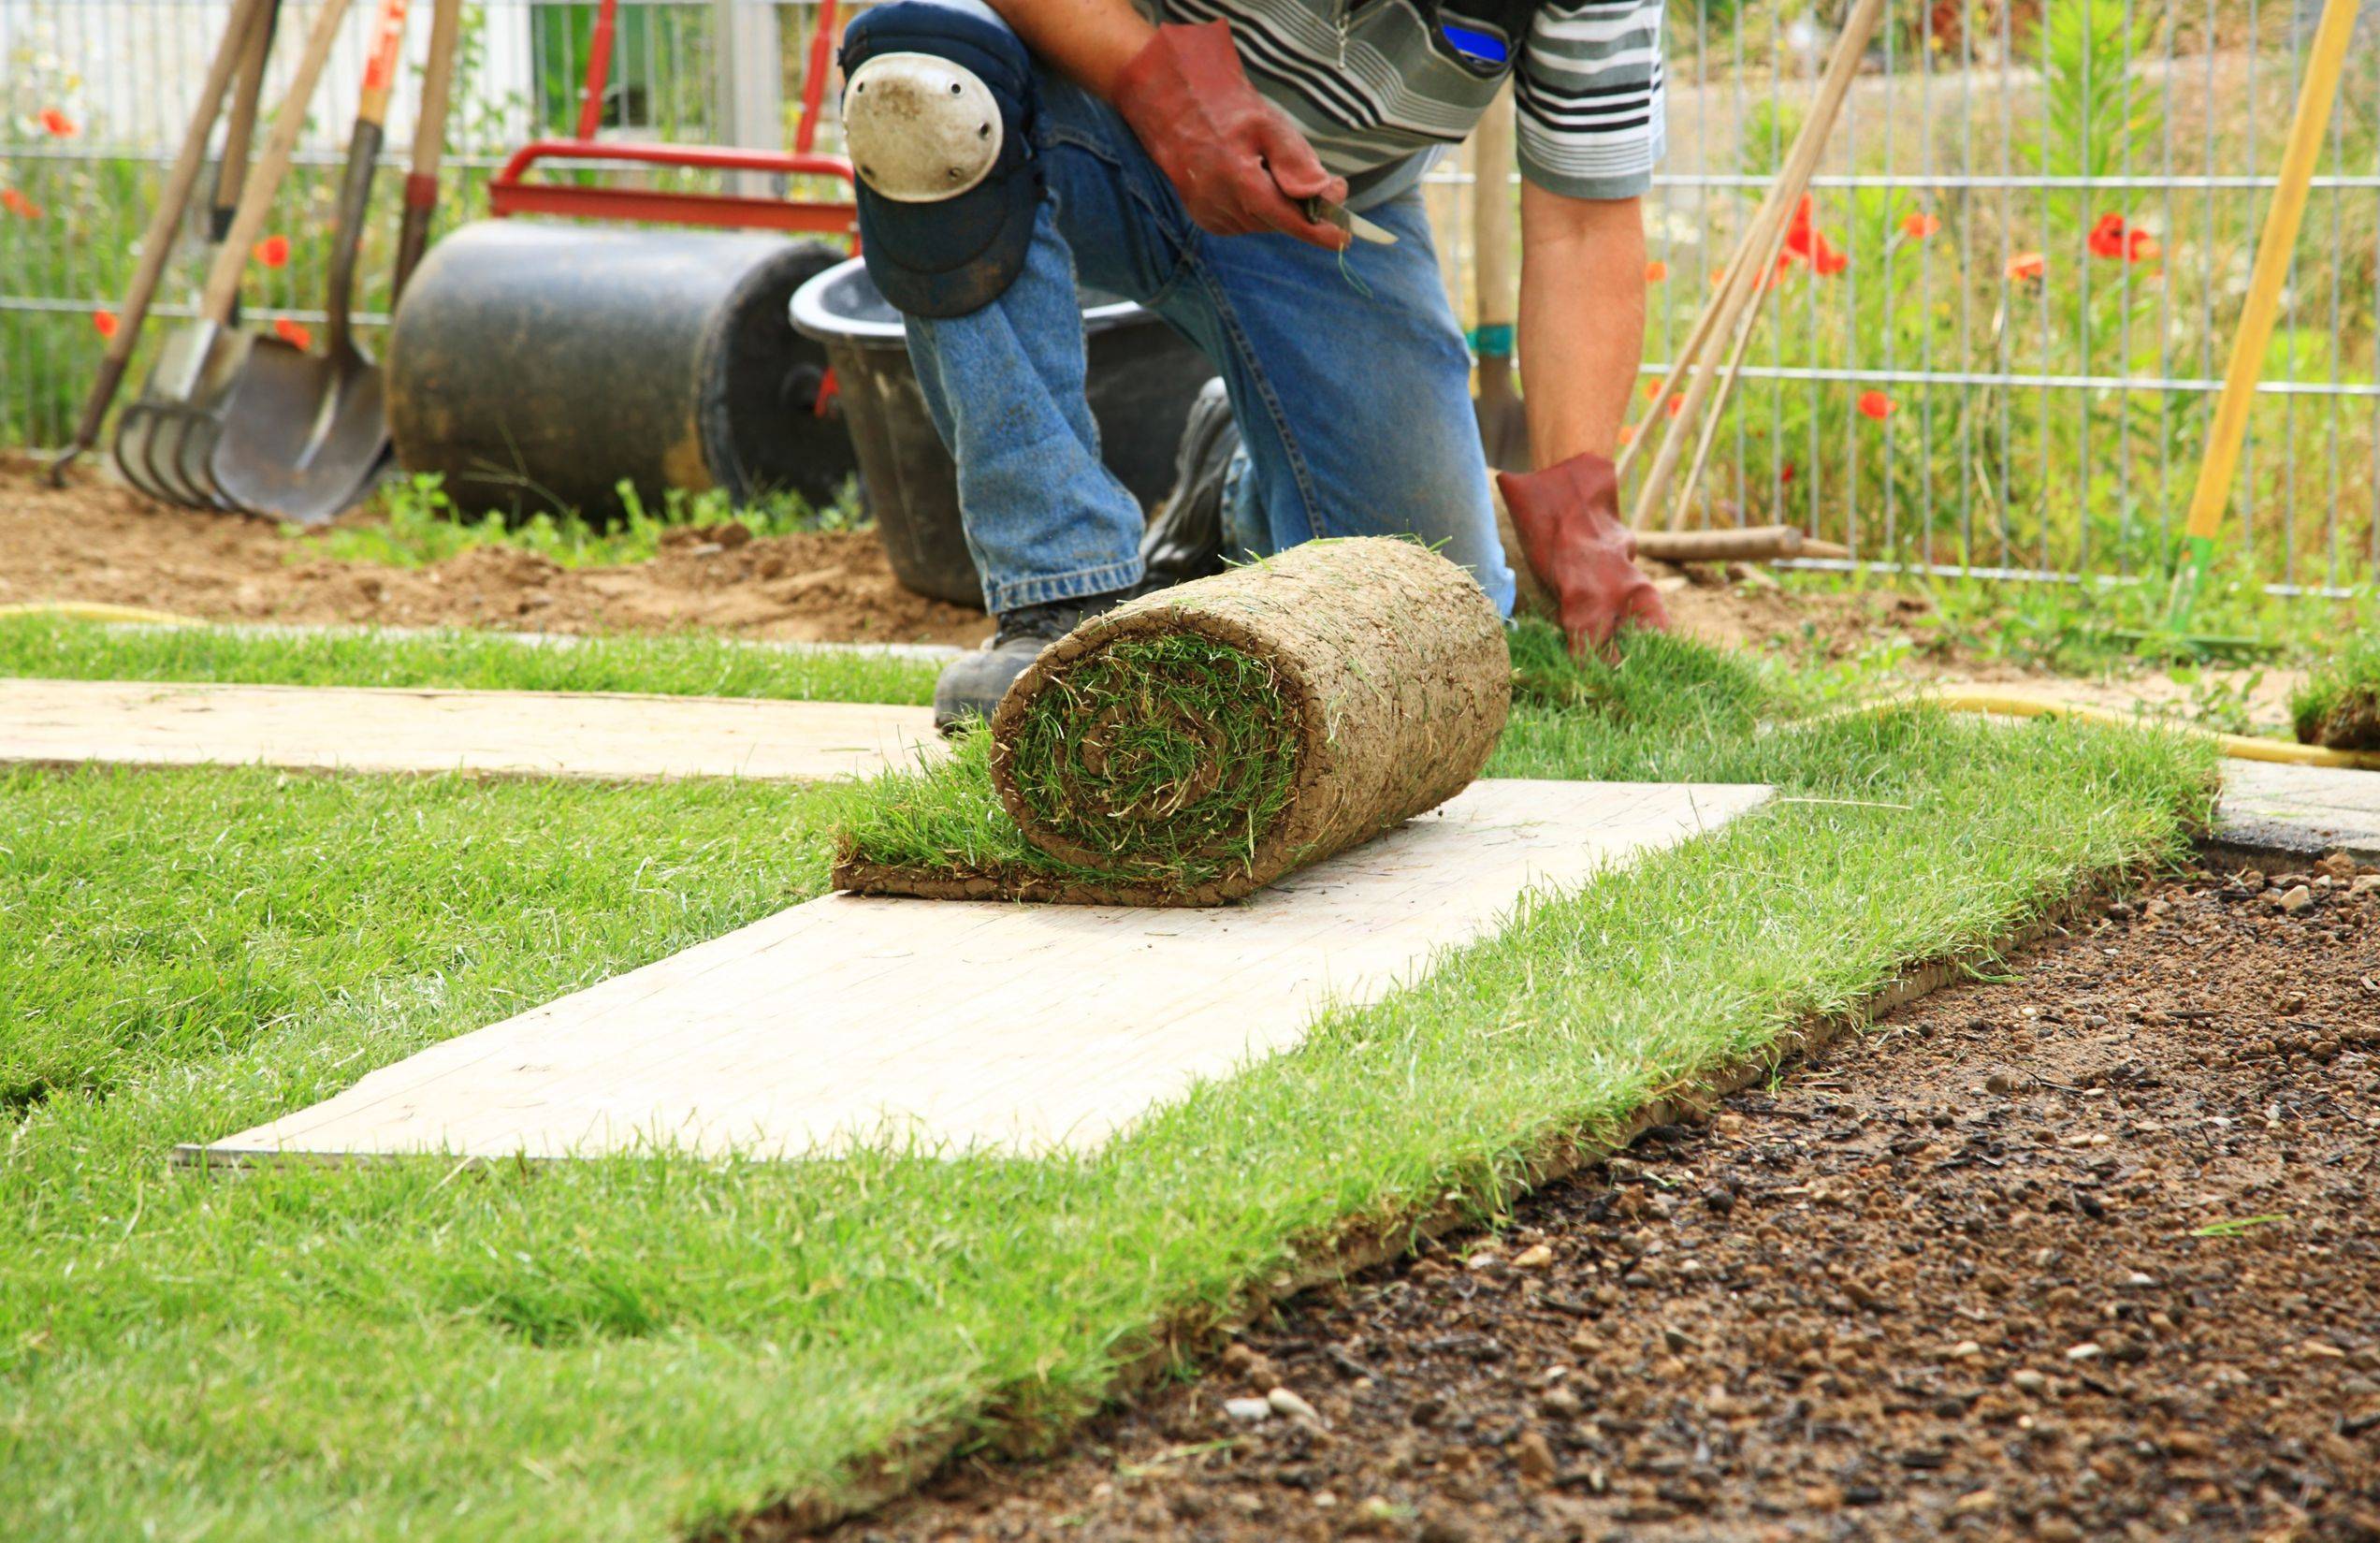 Искусственный газон для дачи: преимущества рулонного покрытия, укладка и уход